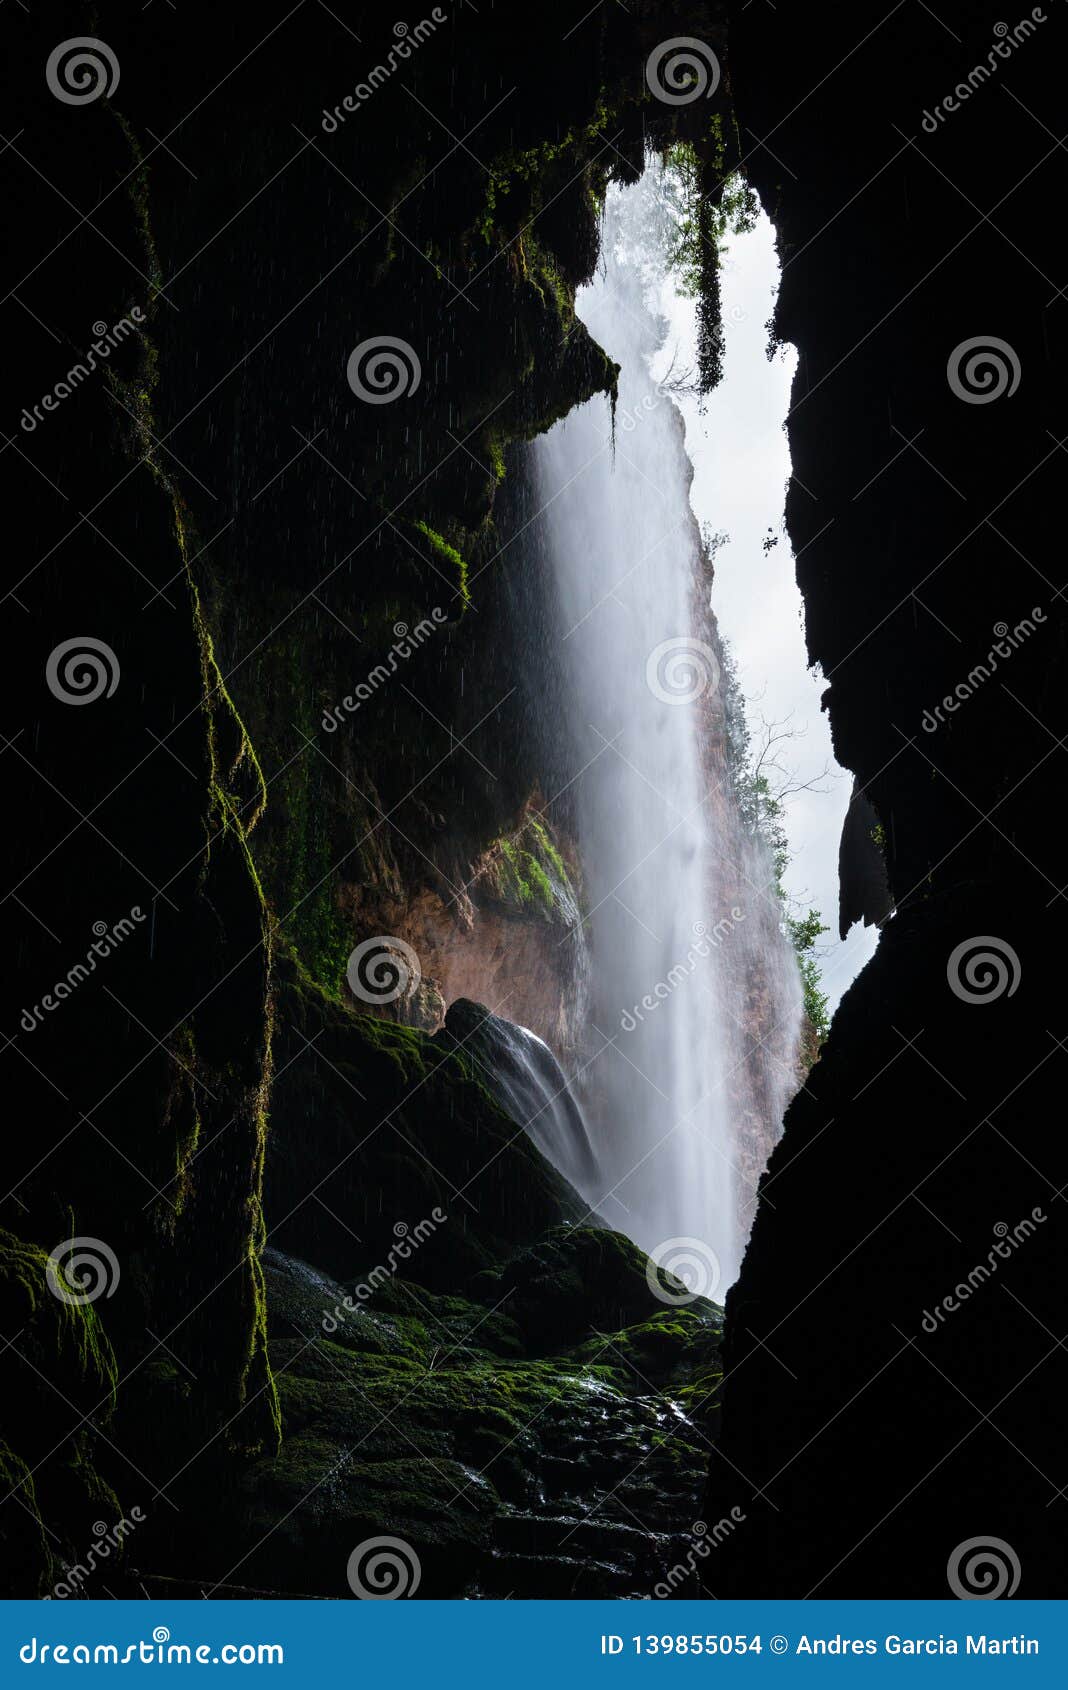 beautiful waterfall on the piedra river in aragon